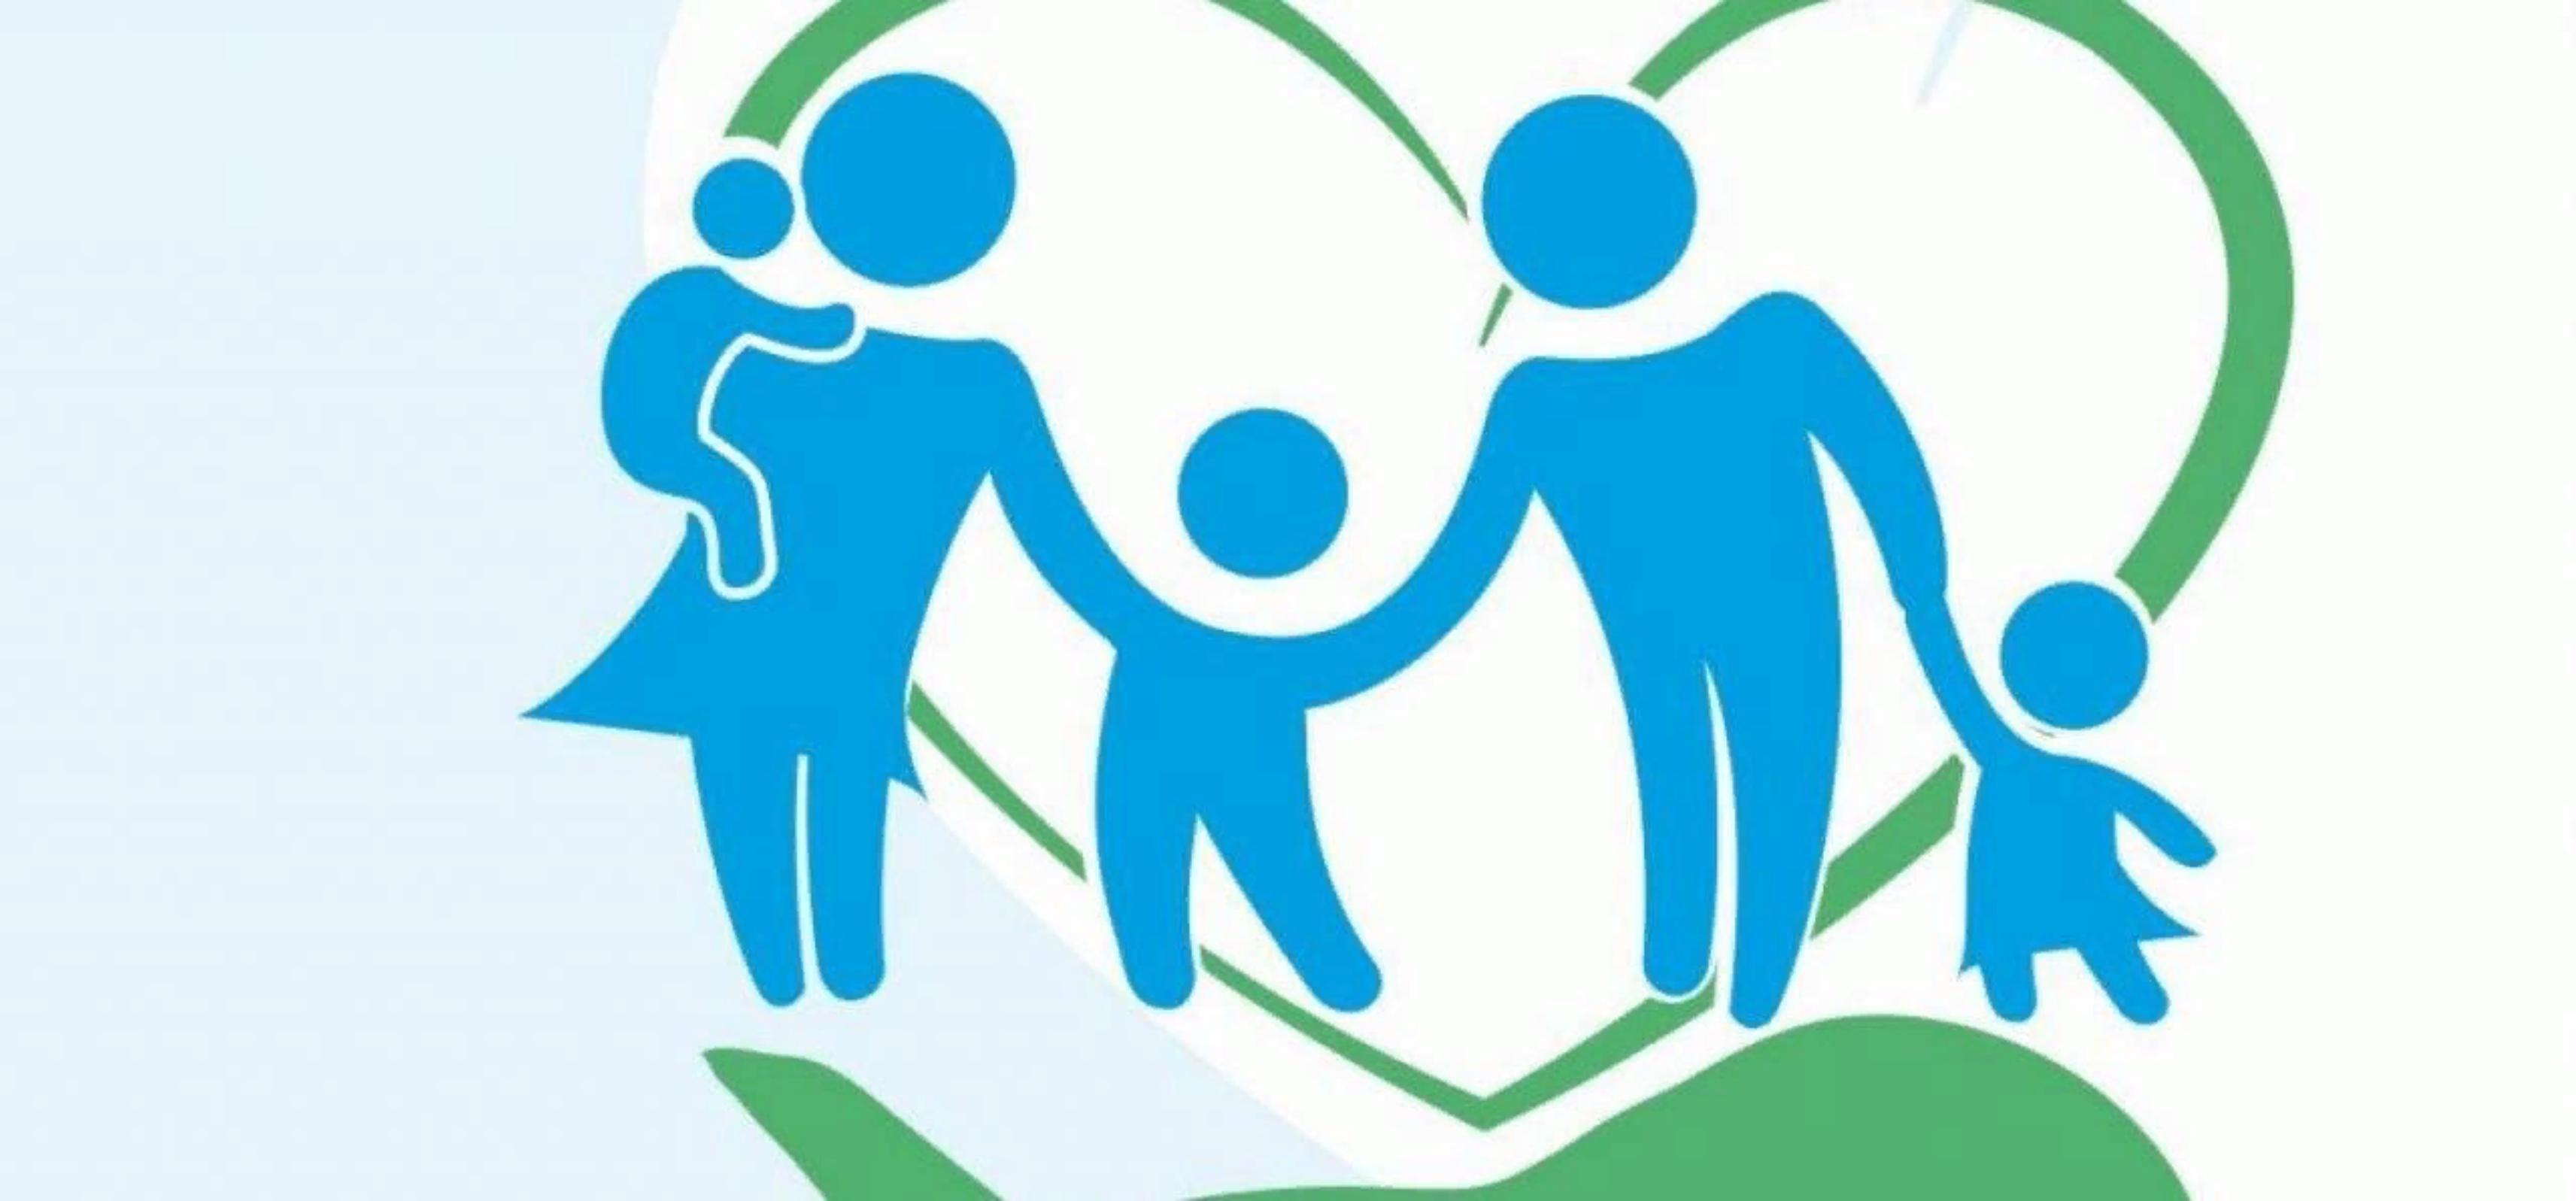 Поддержки и социального обслуживания населения. Семья логотип. Эмблема социальной работы. Социальная поддержка семей. Социальная защита семей с детьми.